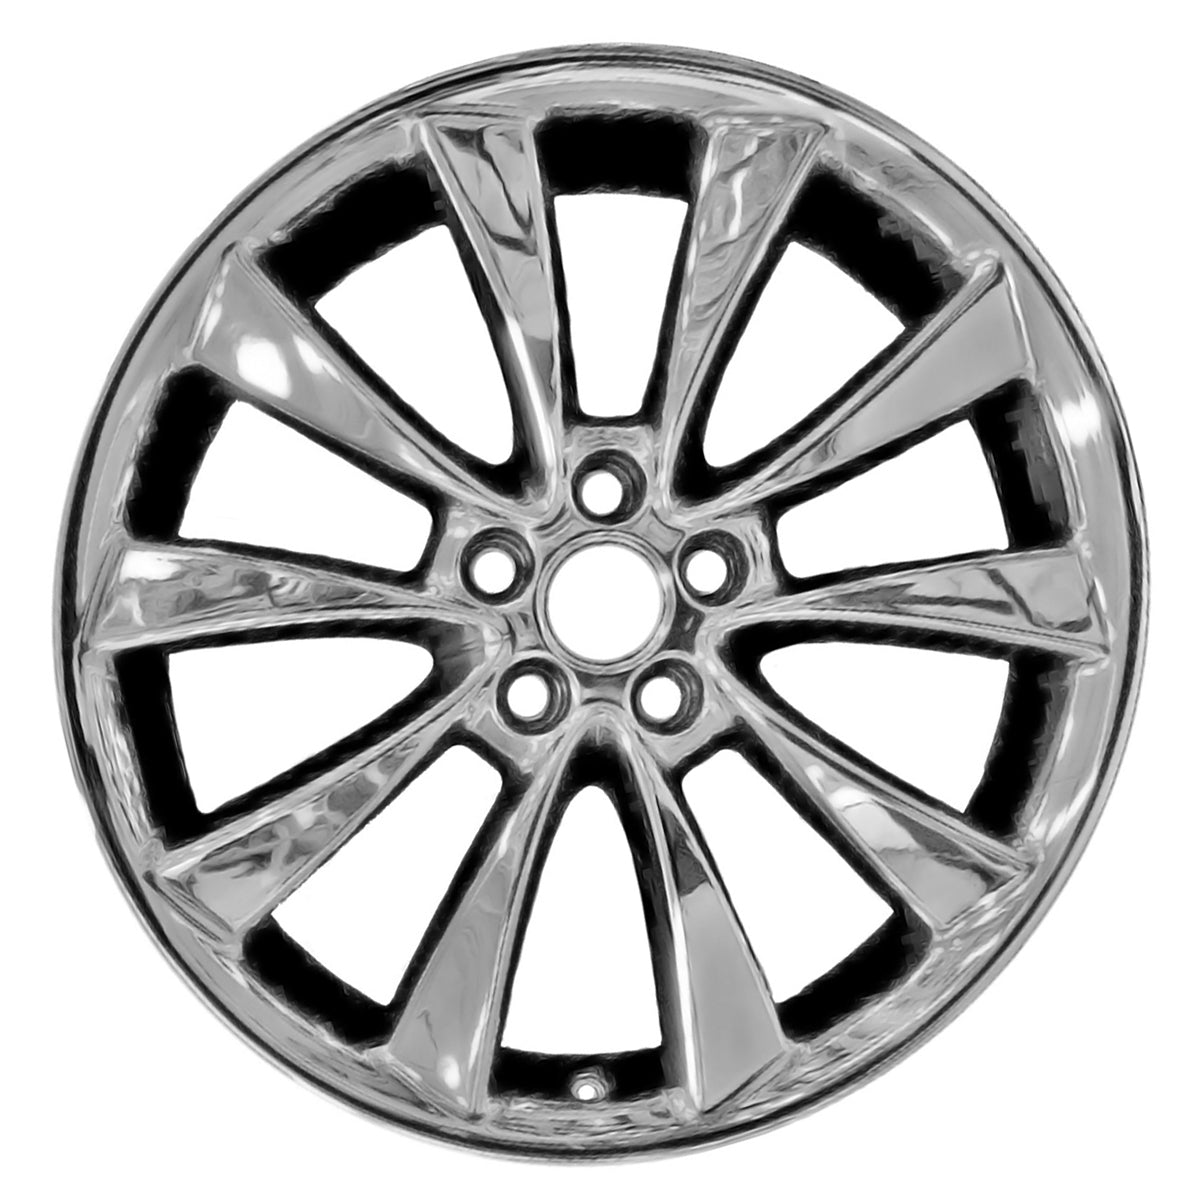 2012 Ford Flex 20" OEM Wheel Rim W3824CHR